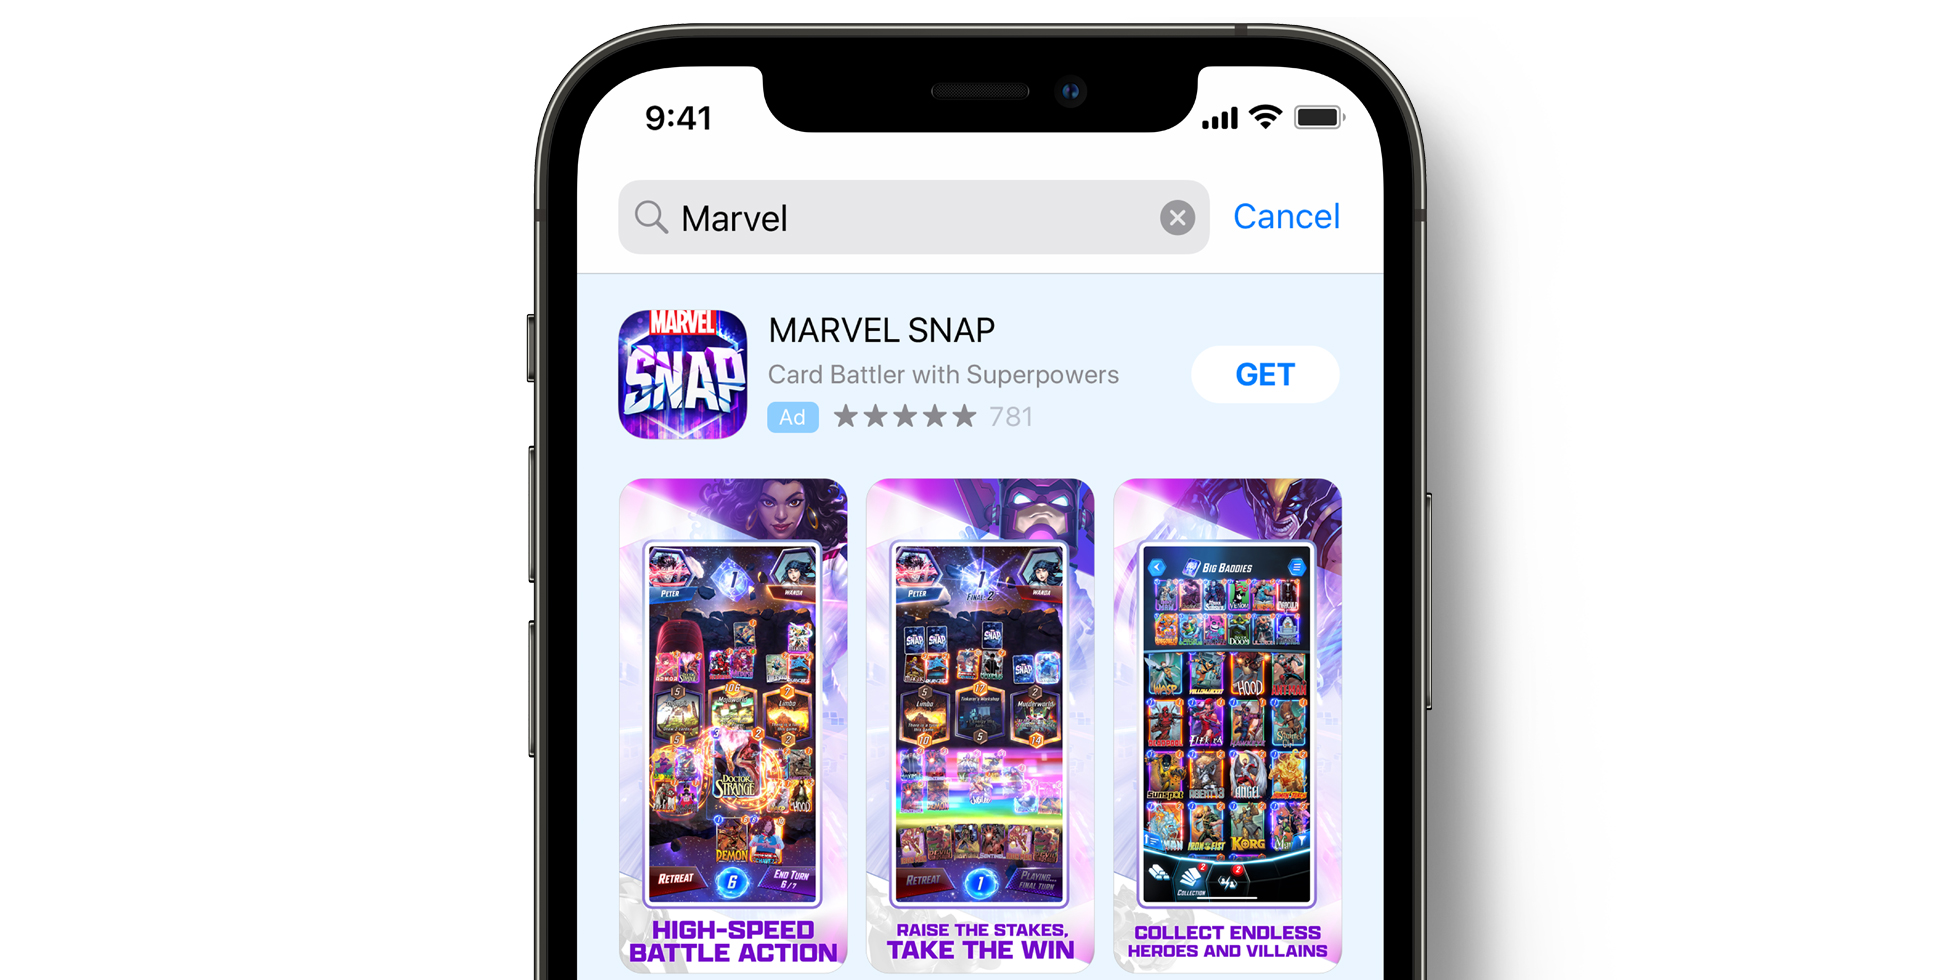 Annonce MARVEL SNAP dans l’App Store